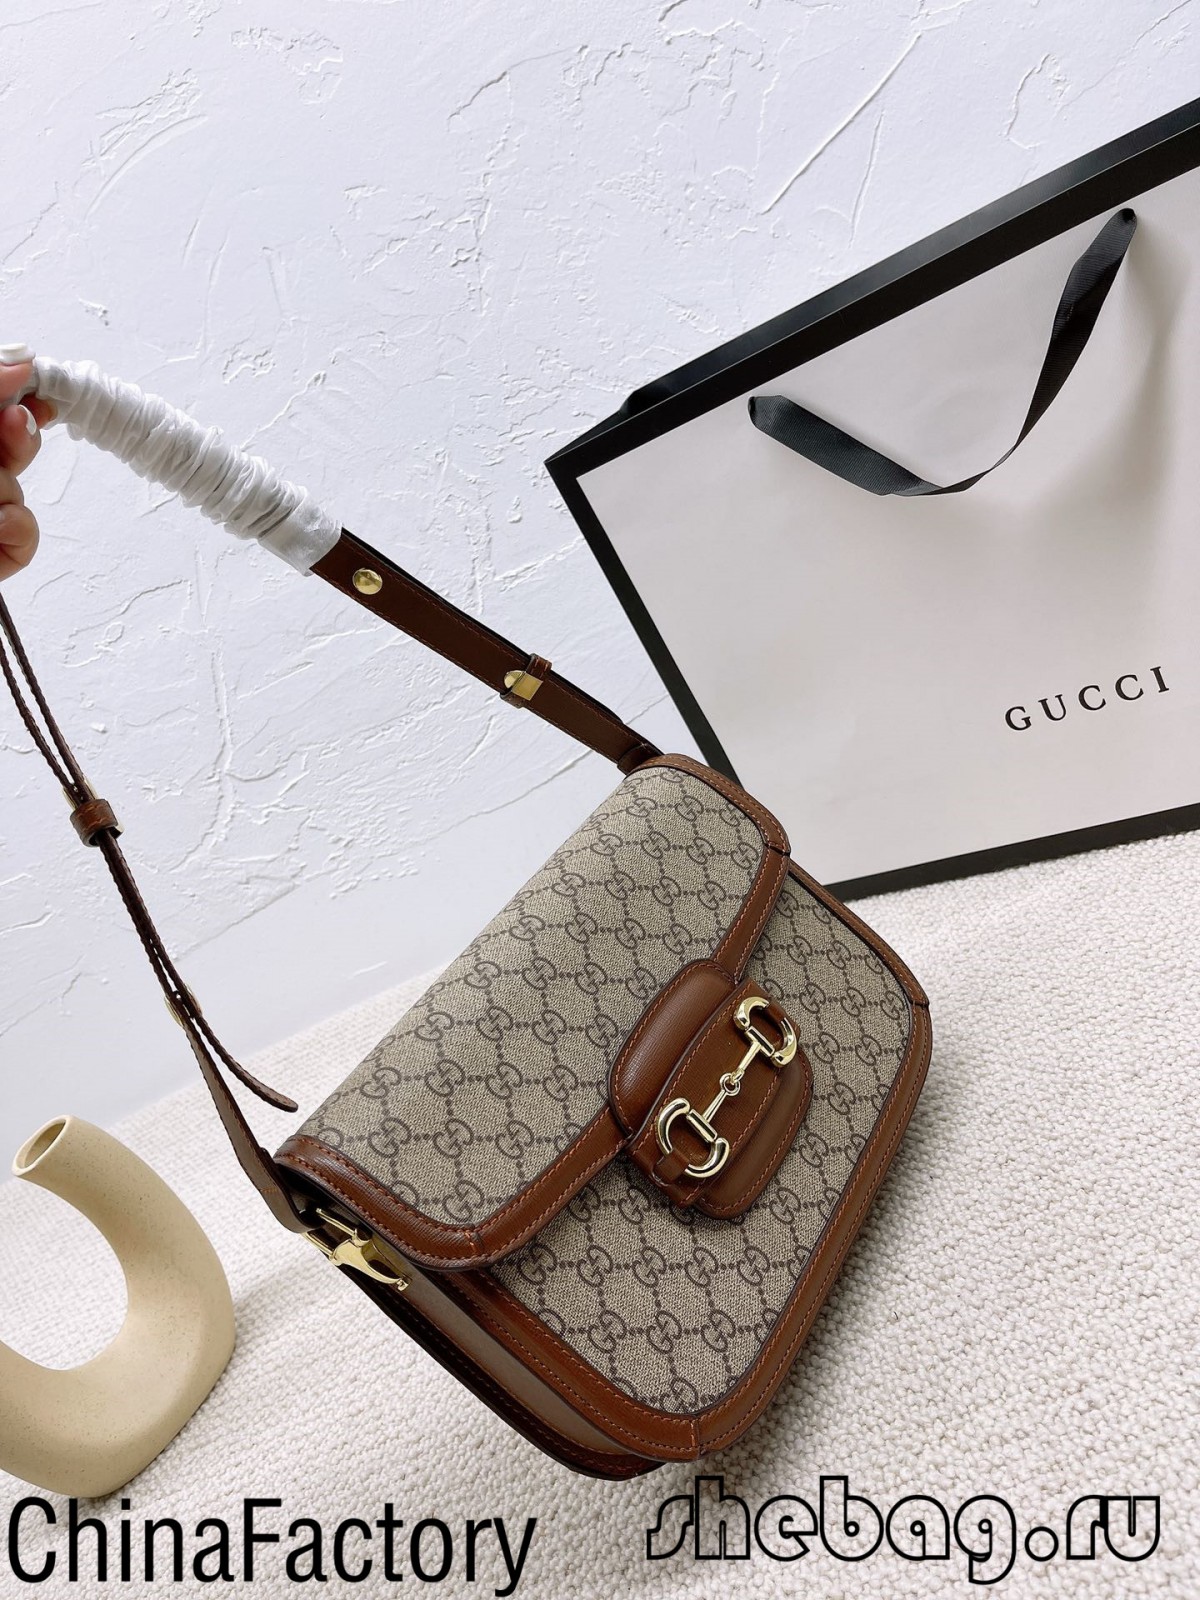 შეიძინეთ Gucci Horse bit hobo ჩანთის ასლი: Gucci 1955 (2022 წლის ყველაზე ცხელი)-საუკეთესო ხარისხის ყალბი Louis Vuitton-ის ჩანთების ონლაინ მაღაზია, რეპლიკა დიზაინერის ჩანთა ru